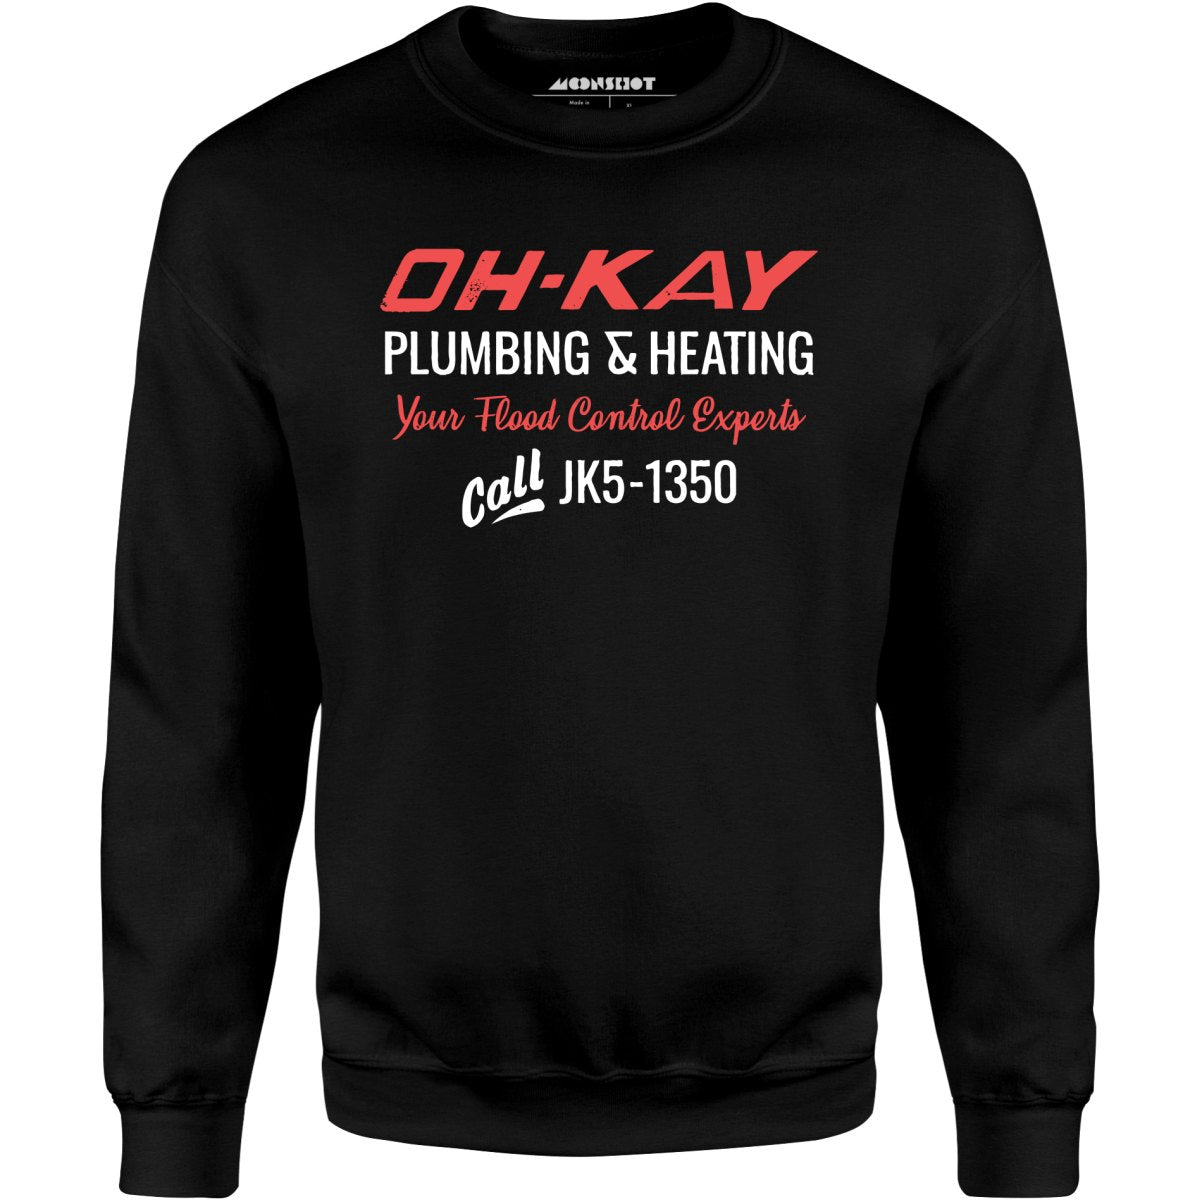 Oh-Kay Plumbing & Heating - Unisex Sweatshirt